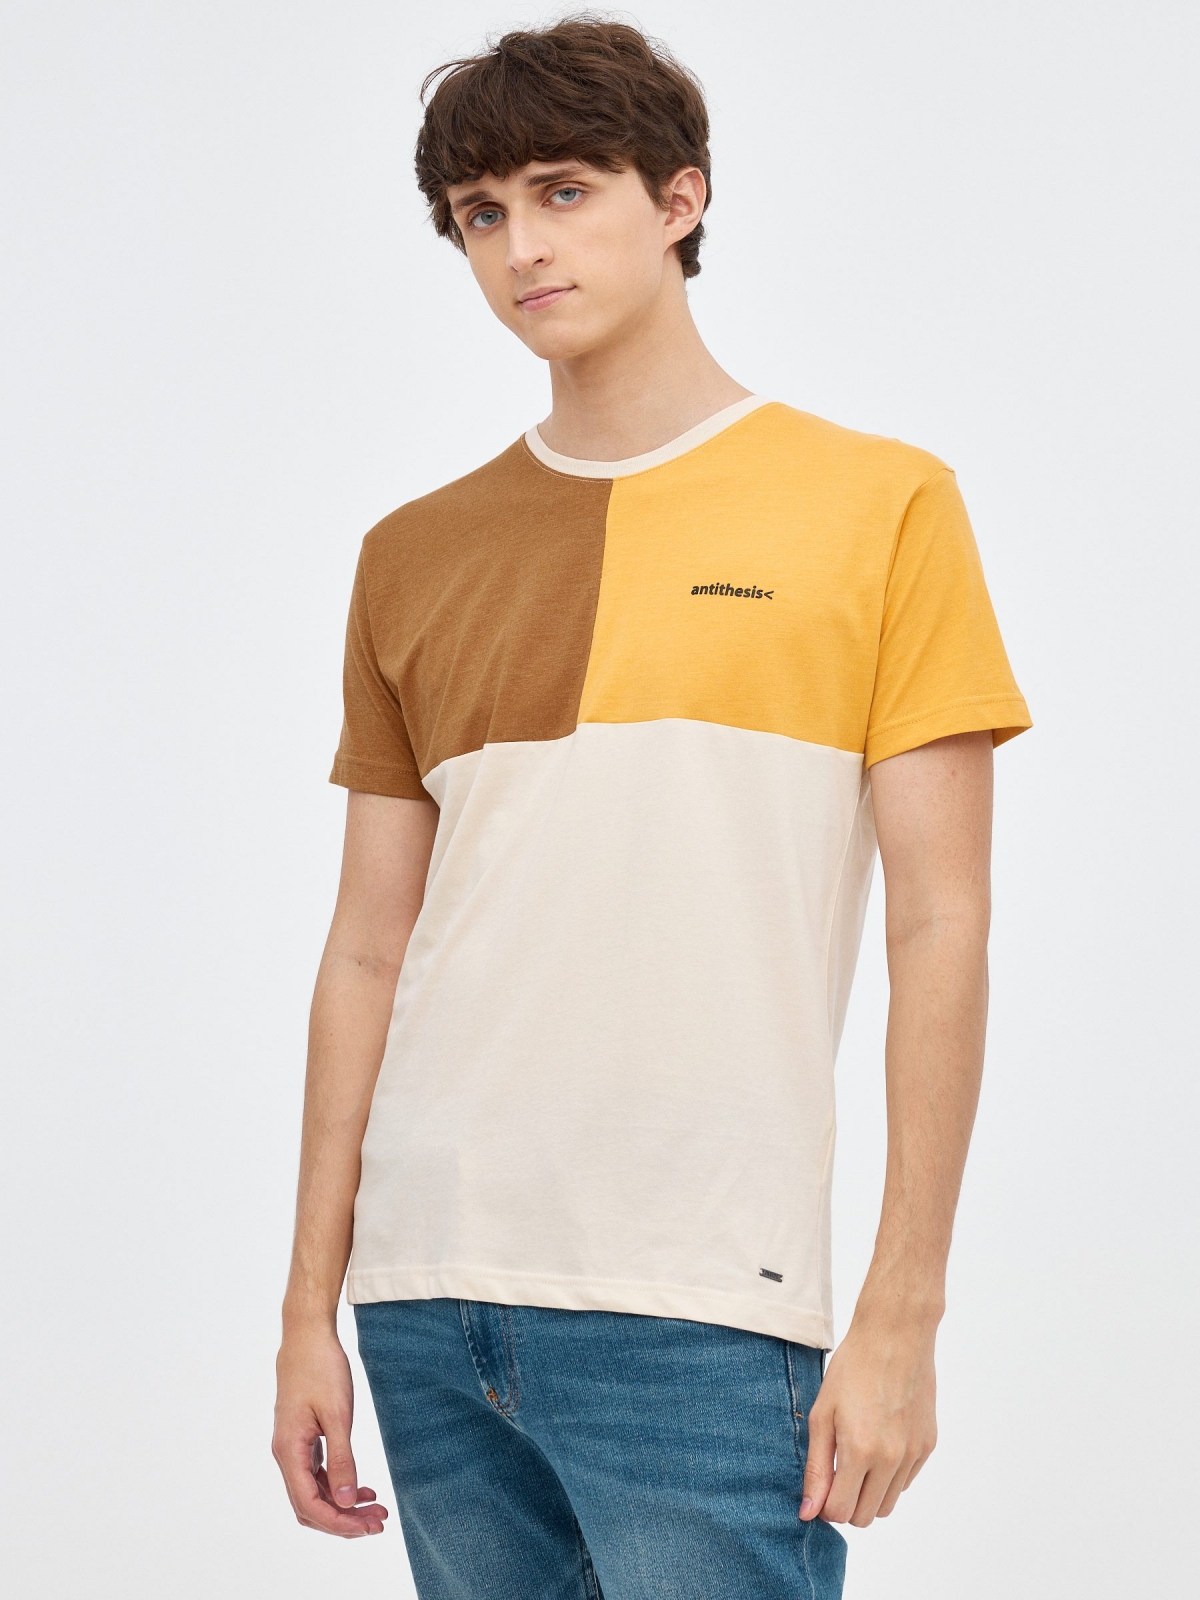 T-shirt tricolor com blocos areia vista meia frontal